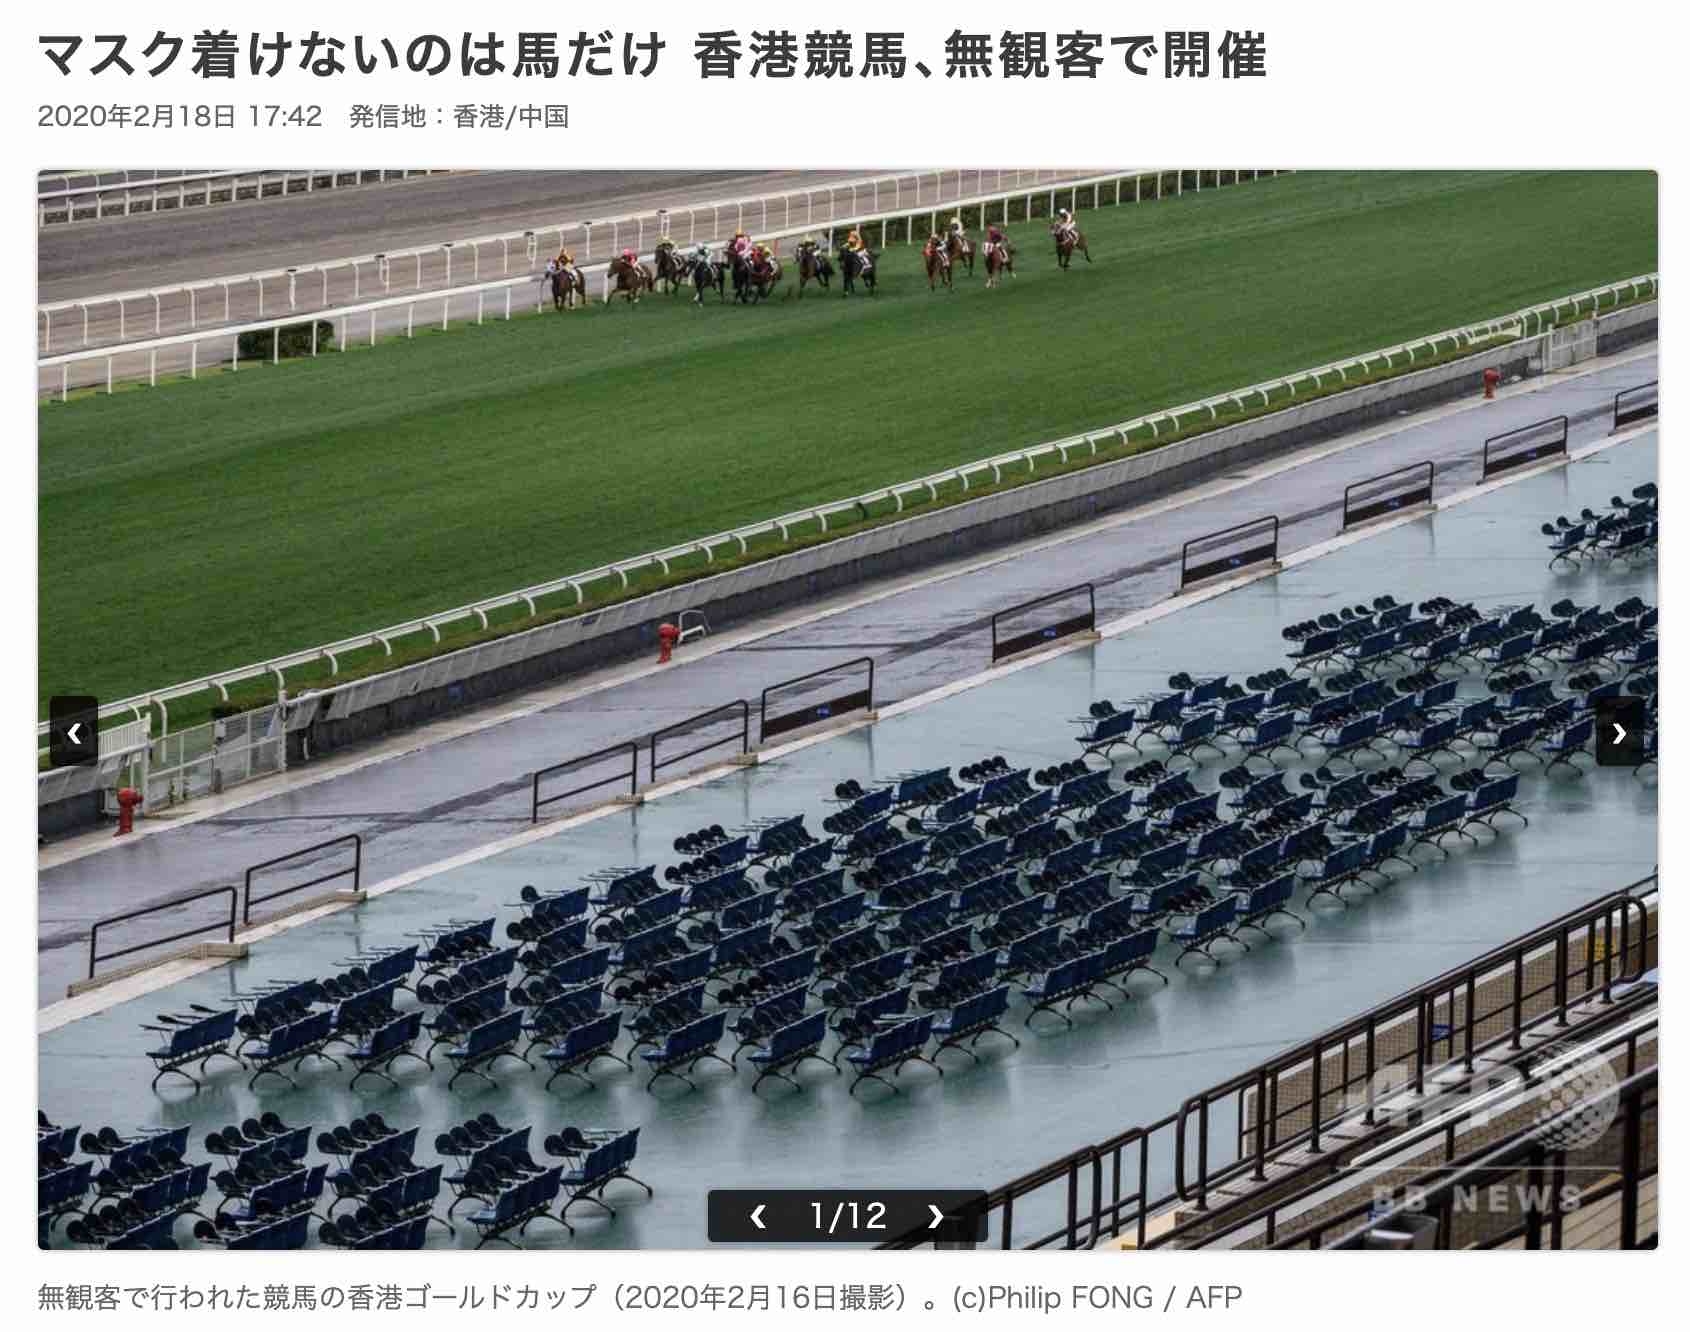 コロナウィルスの影響で無観客での開催となった香港ゴールドカップ